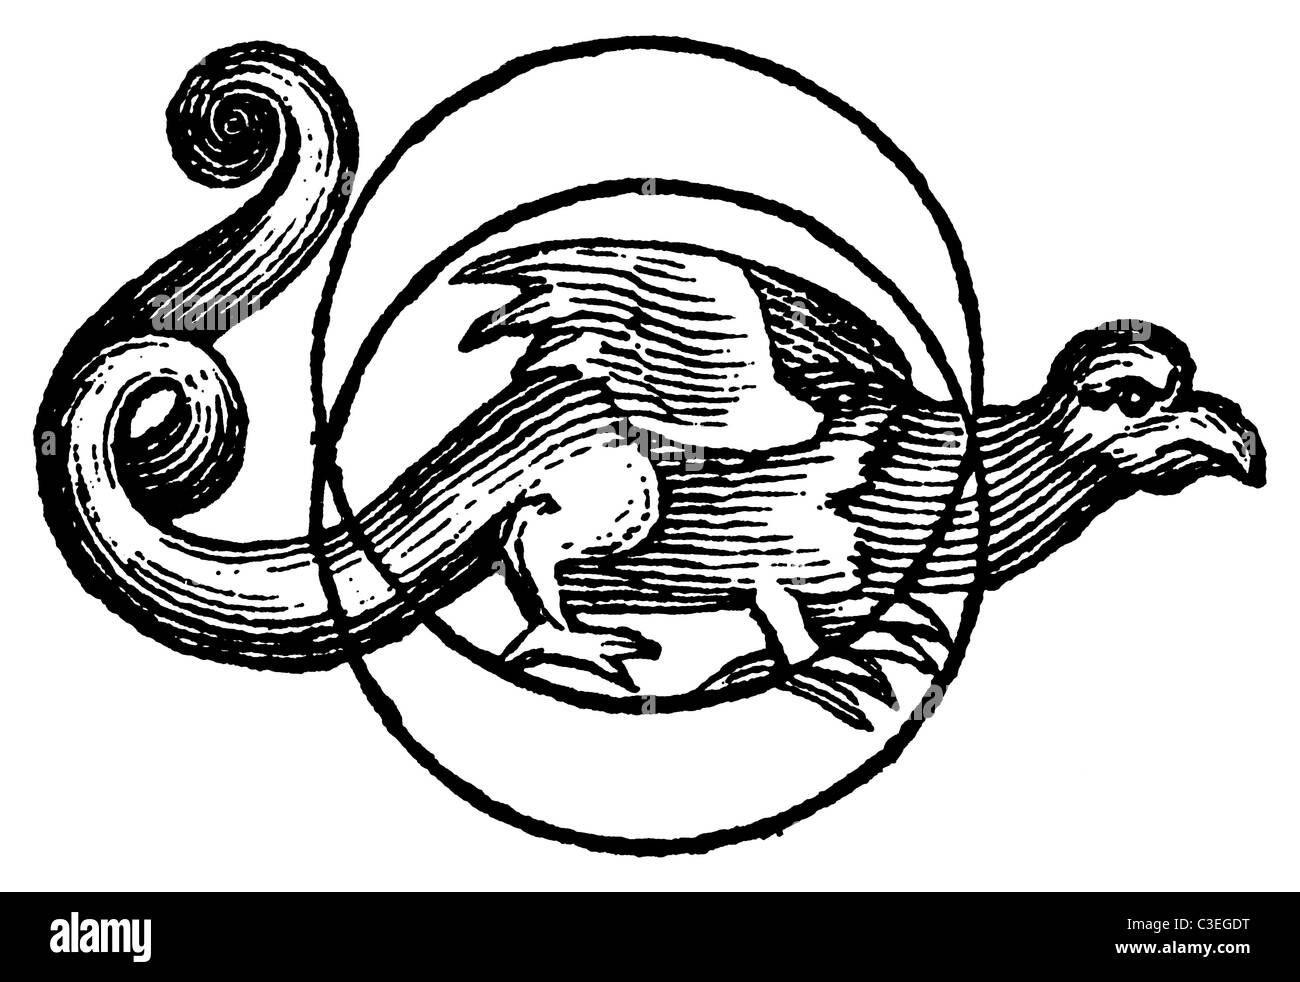 Dragon de la lune - talisman religieuse vintage/occulte de 1801 gravure sur bois Banque D'Images